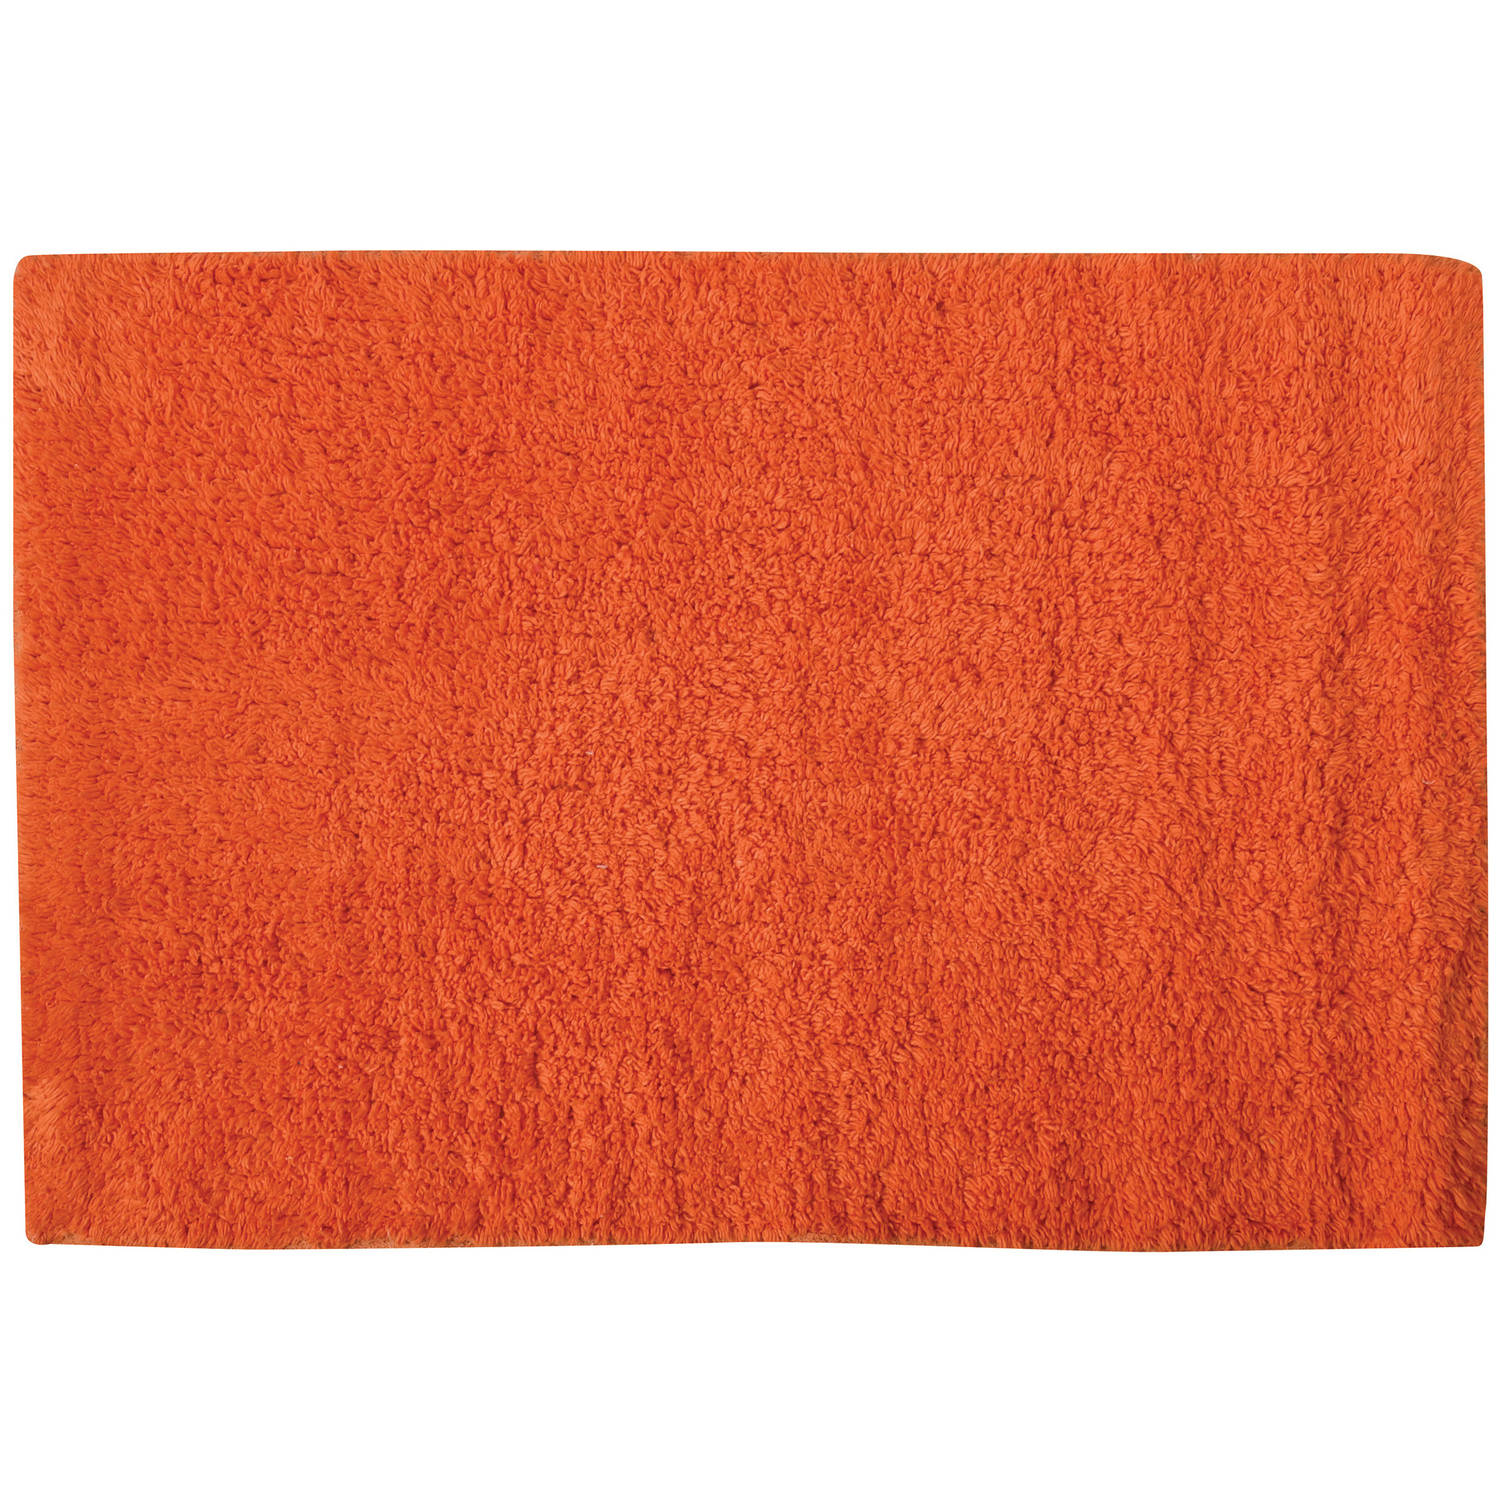 MSV Badkamerkleedje/badmat - voor op de vloer - oranje - 45 x 70 cm - polyester/katoen